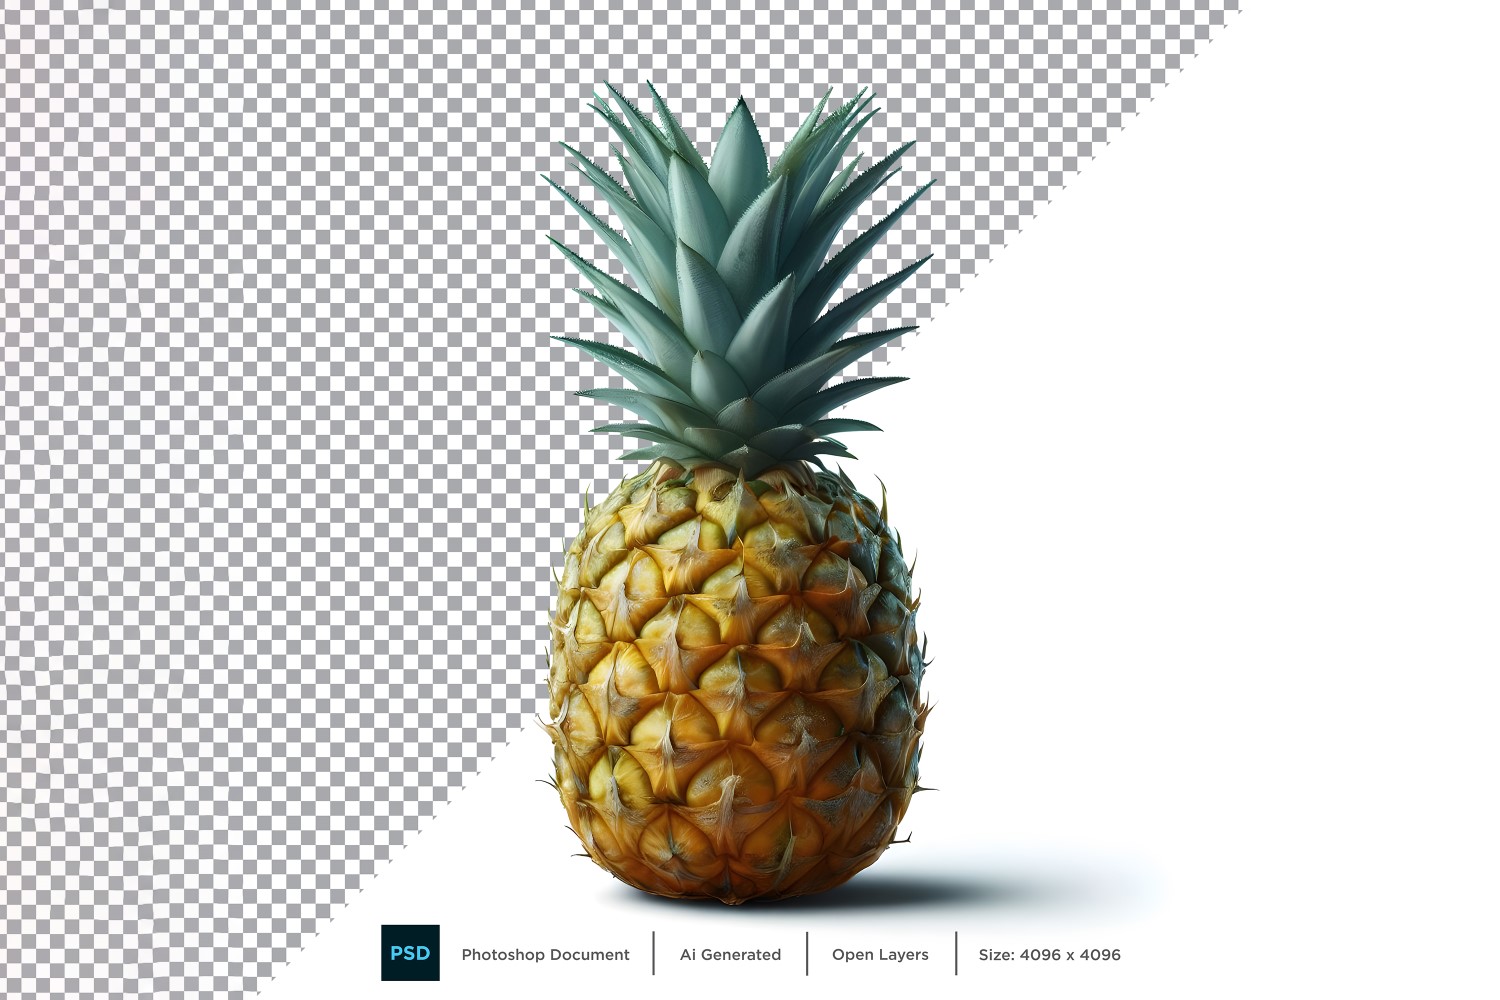 Pineapple Fresh fruit isolated on white background 1